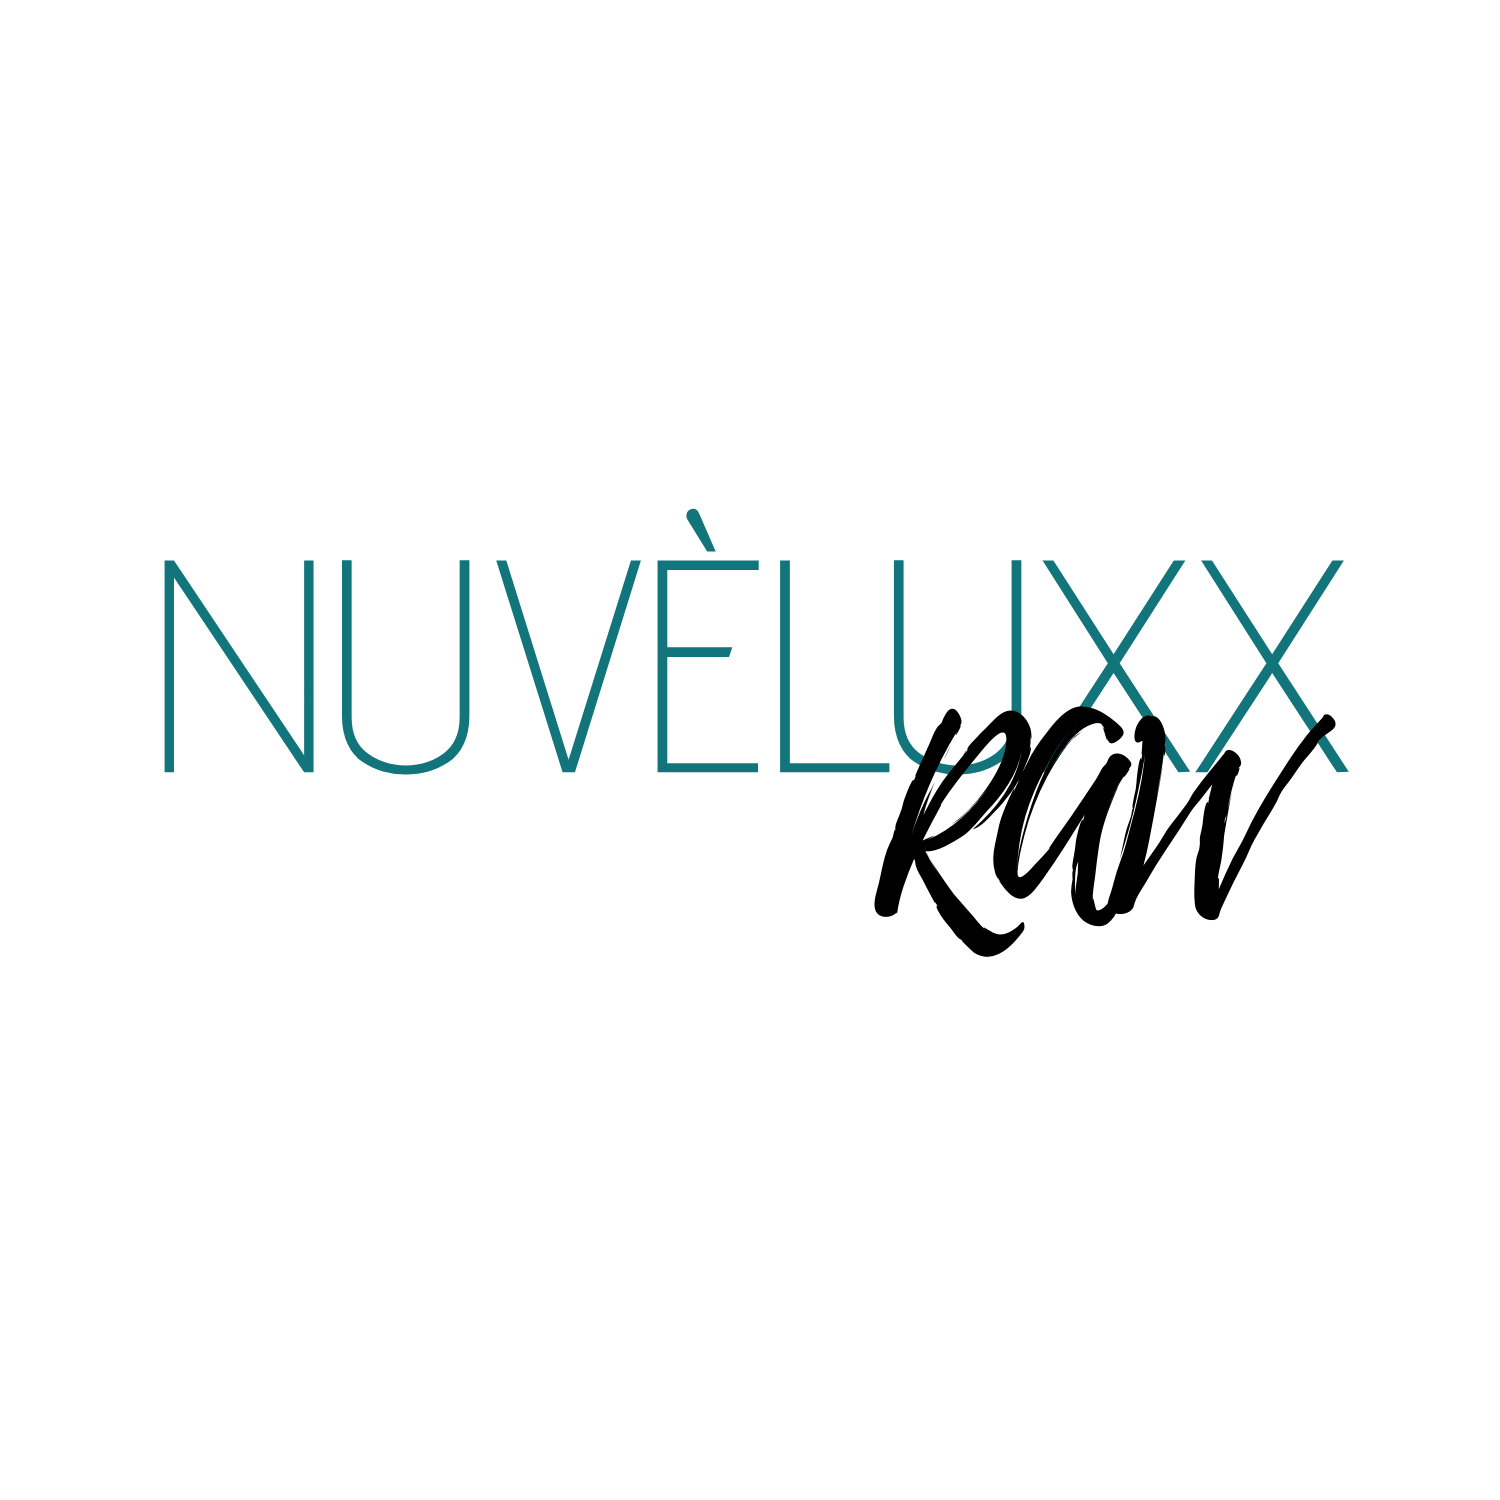 NuvèLuxx Raw Co.